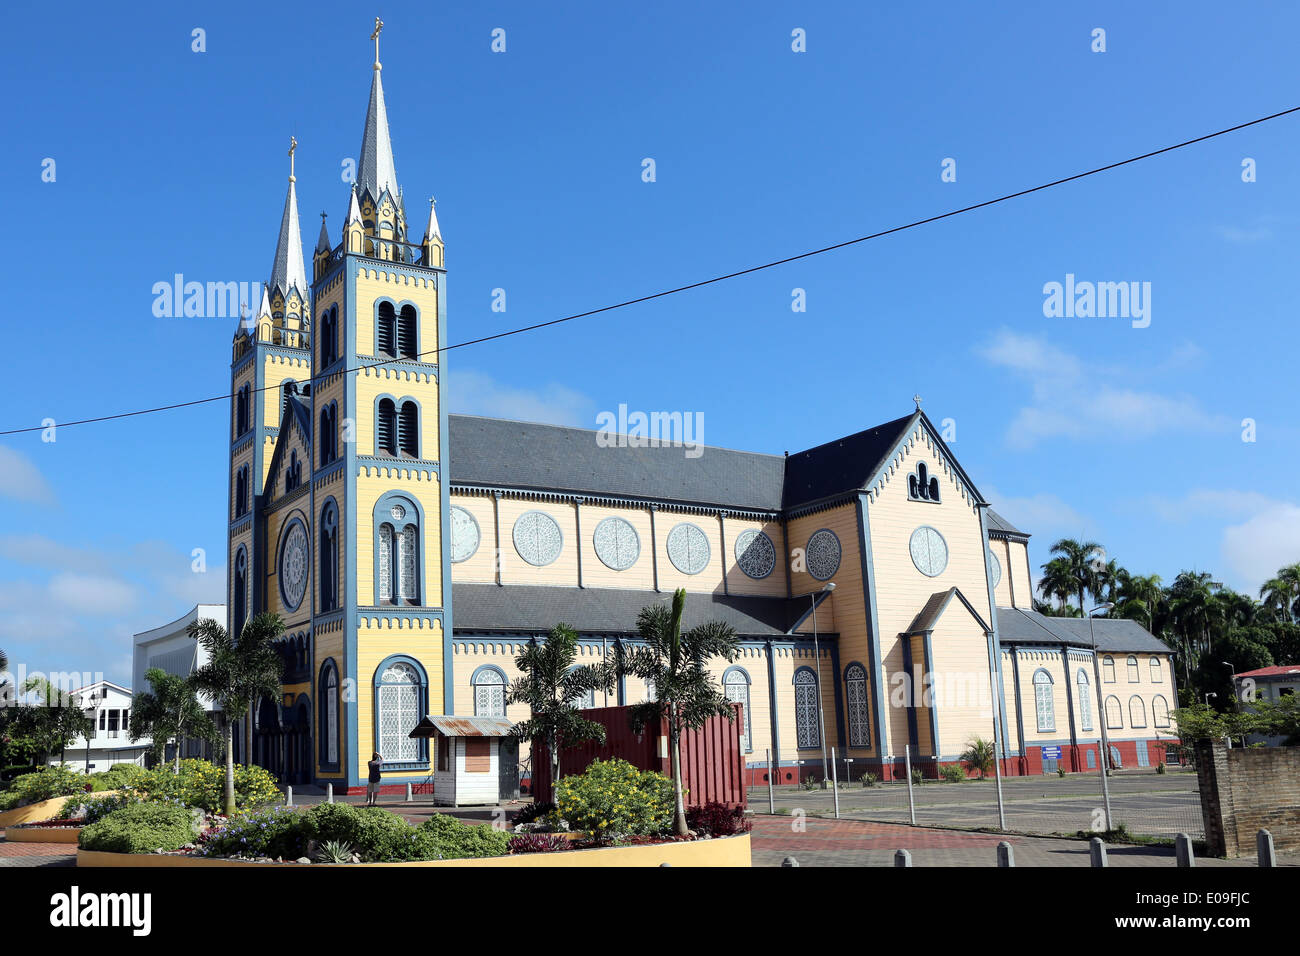 Madera de la Catedral de San Pedro y san Pablo en la Gravenstraat, Paramaribo, capital de Surinam, América Latina Foto de stock